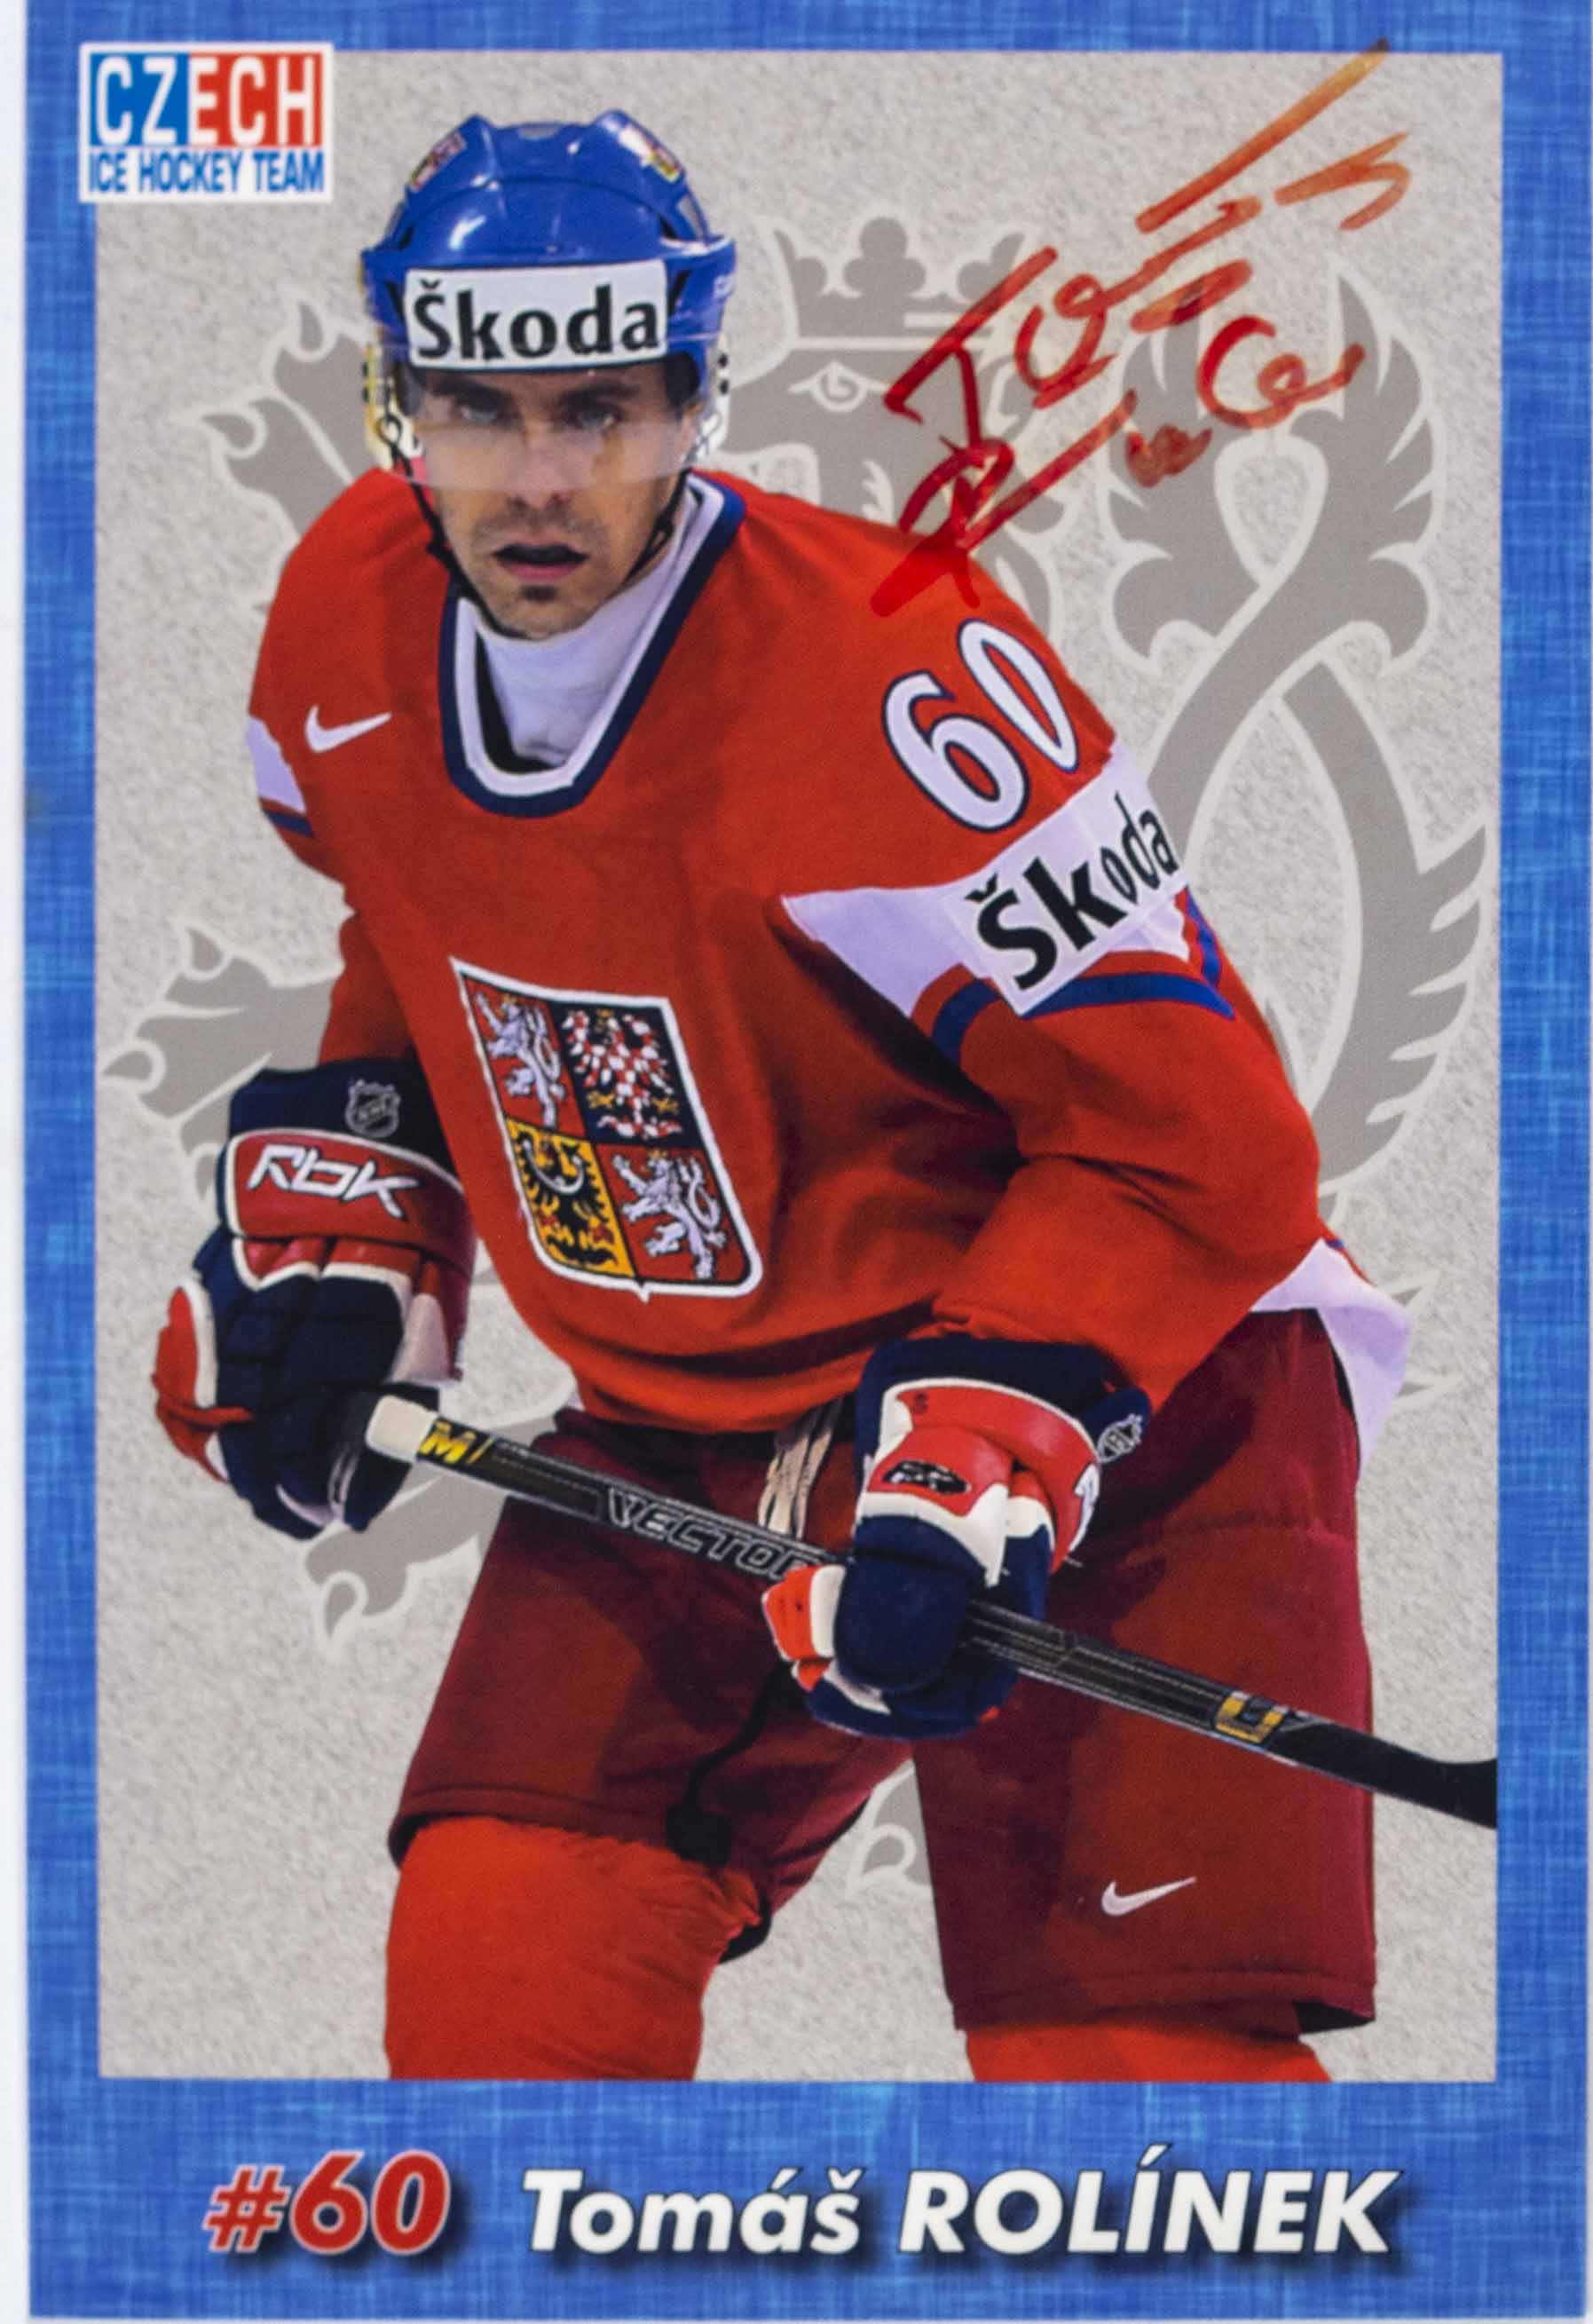 Hokejová karta, Czech Ice hockey team, Tomáš Rolínek, autogram